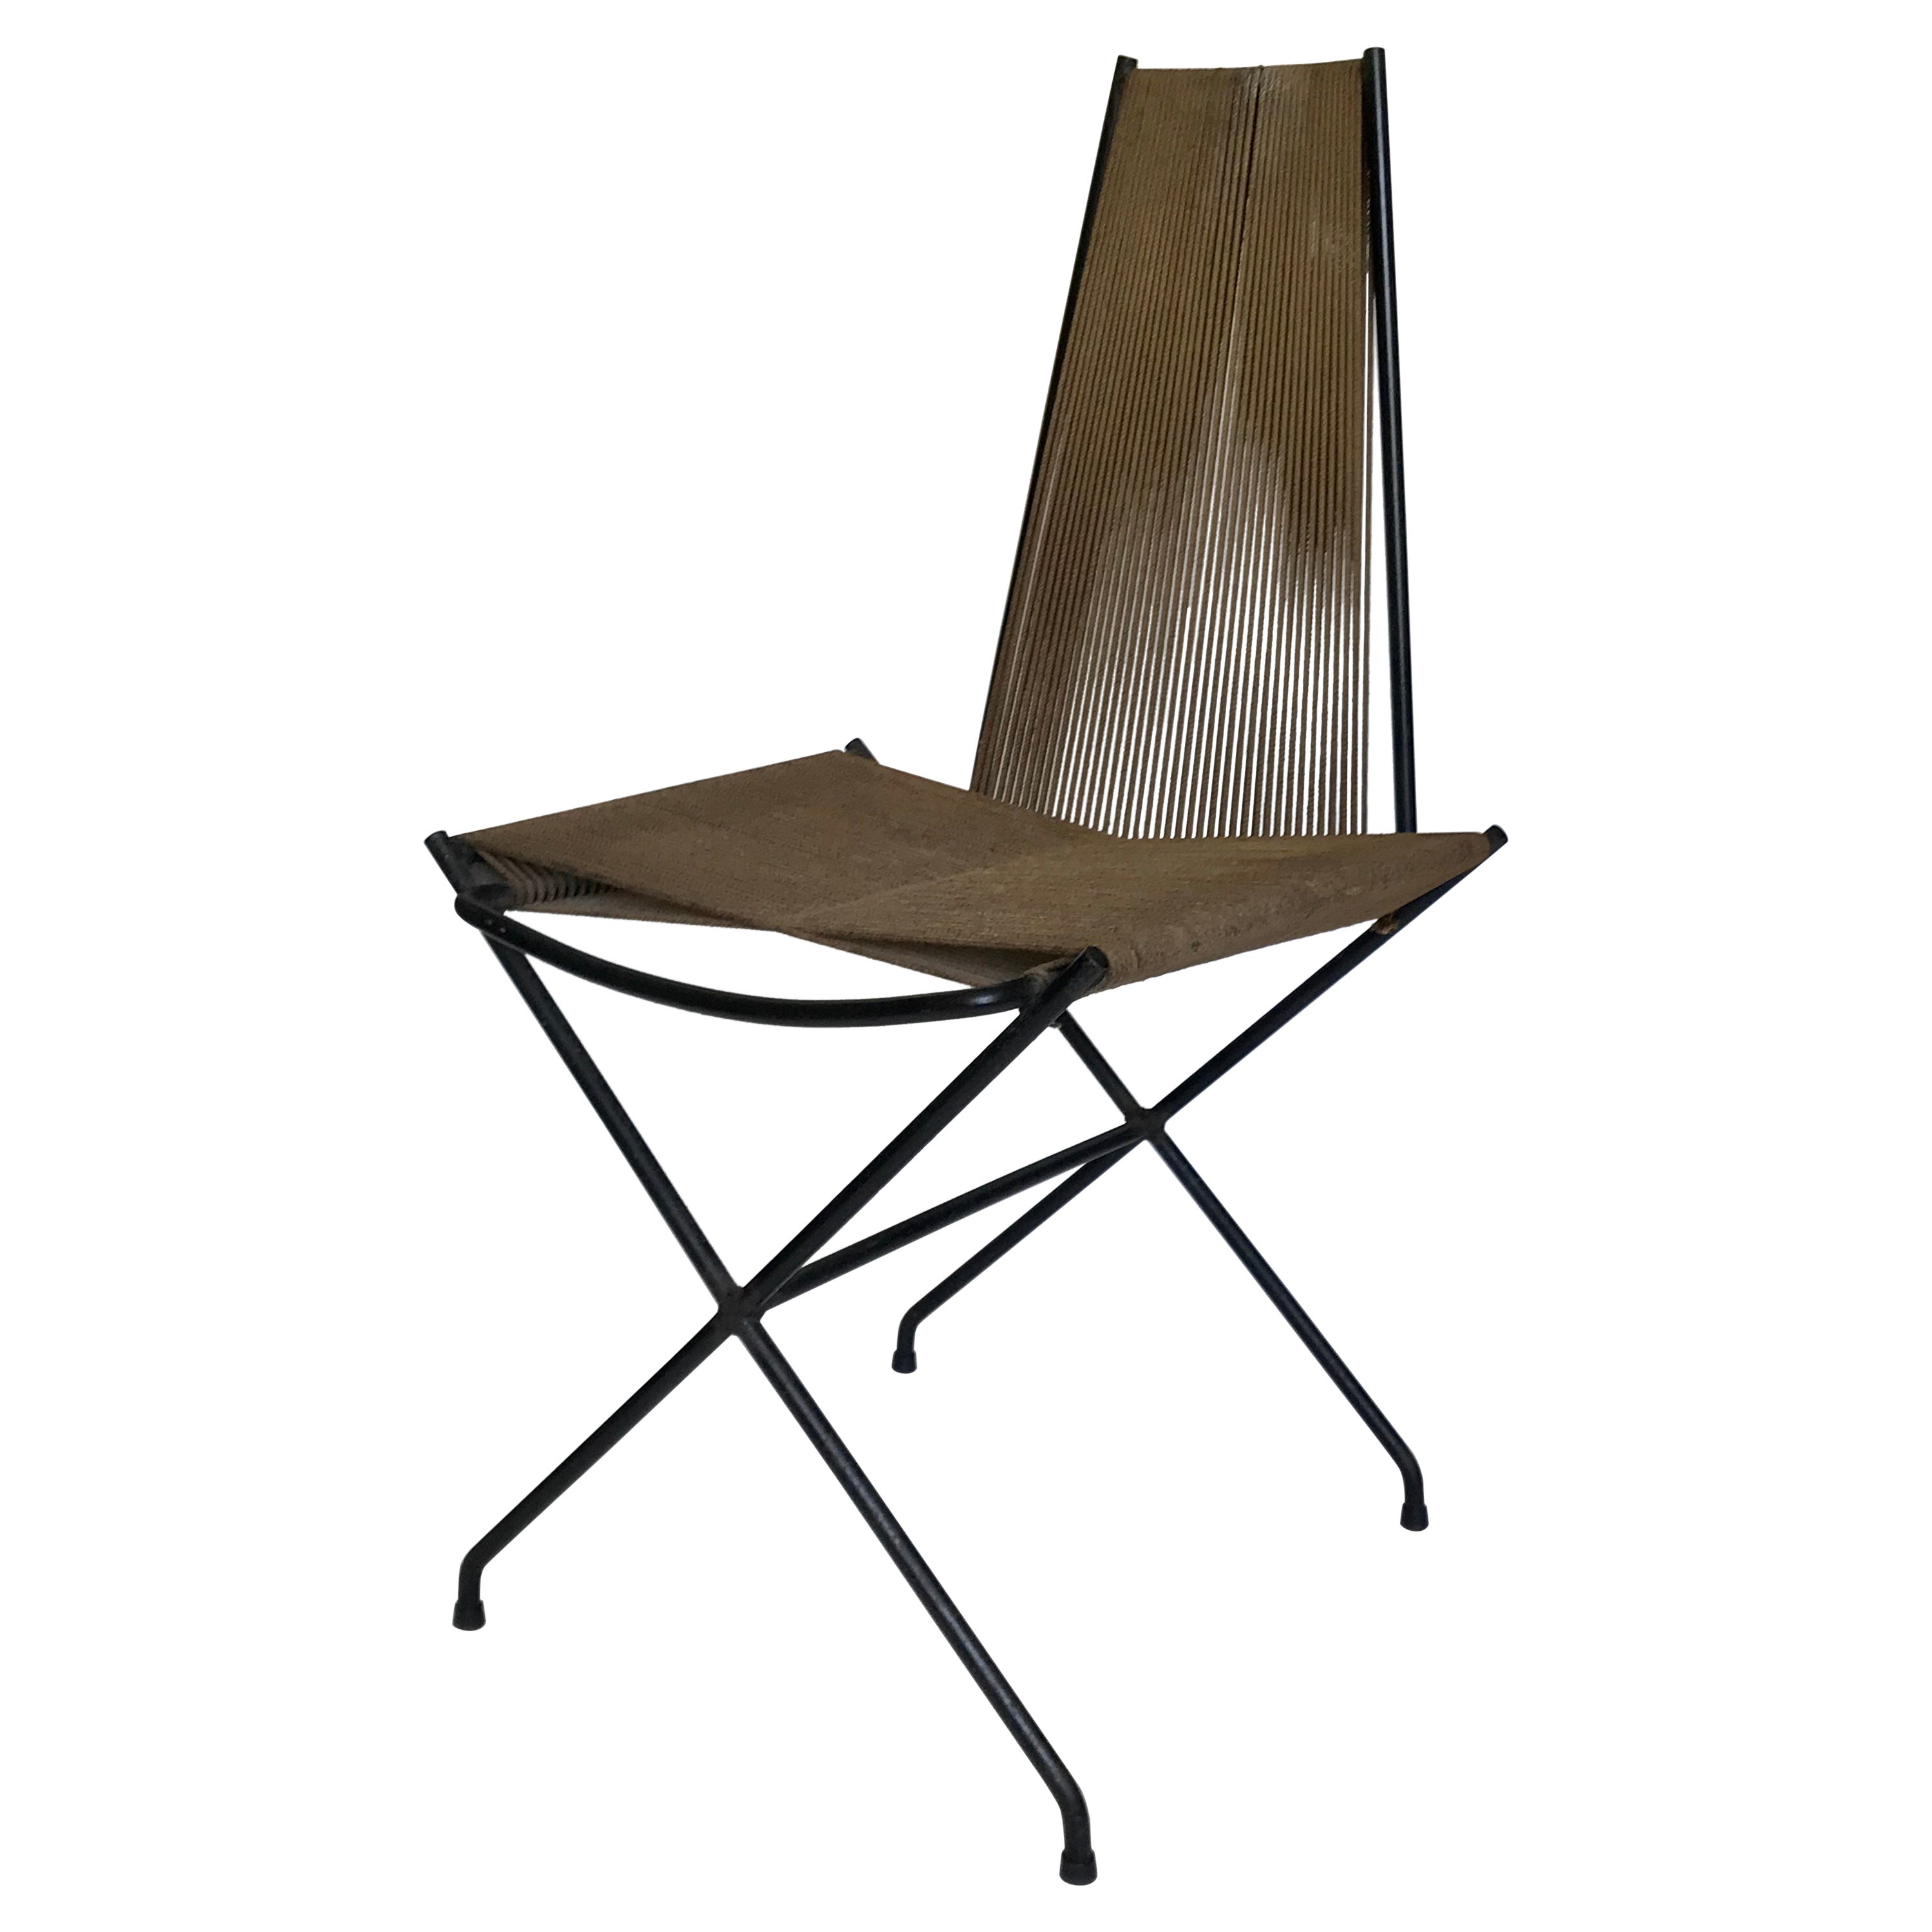 Gunnar Birkerts Architectural Iron + String Chair, 20th Century